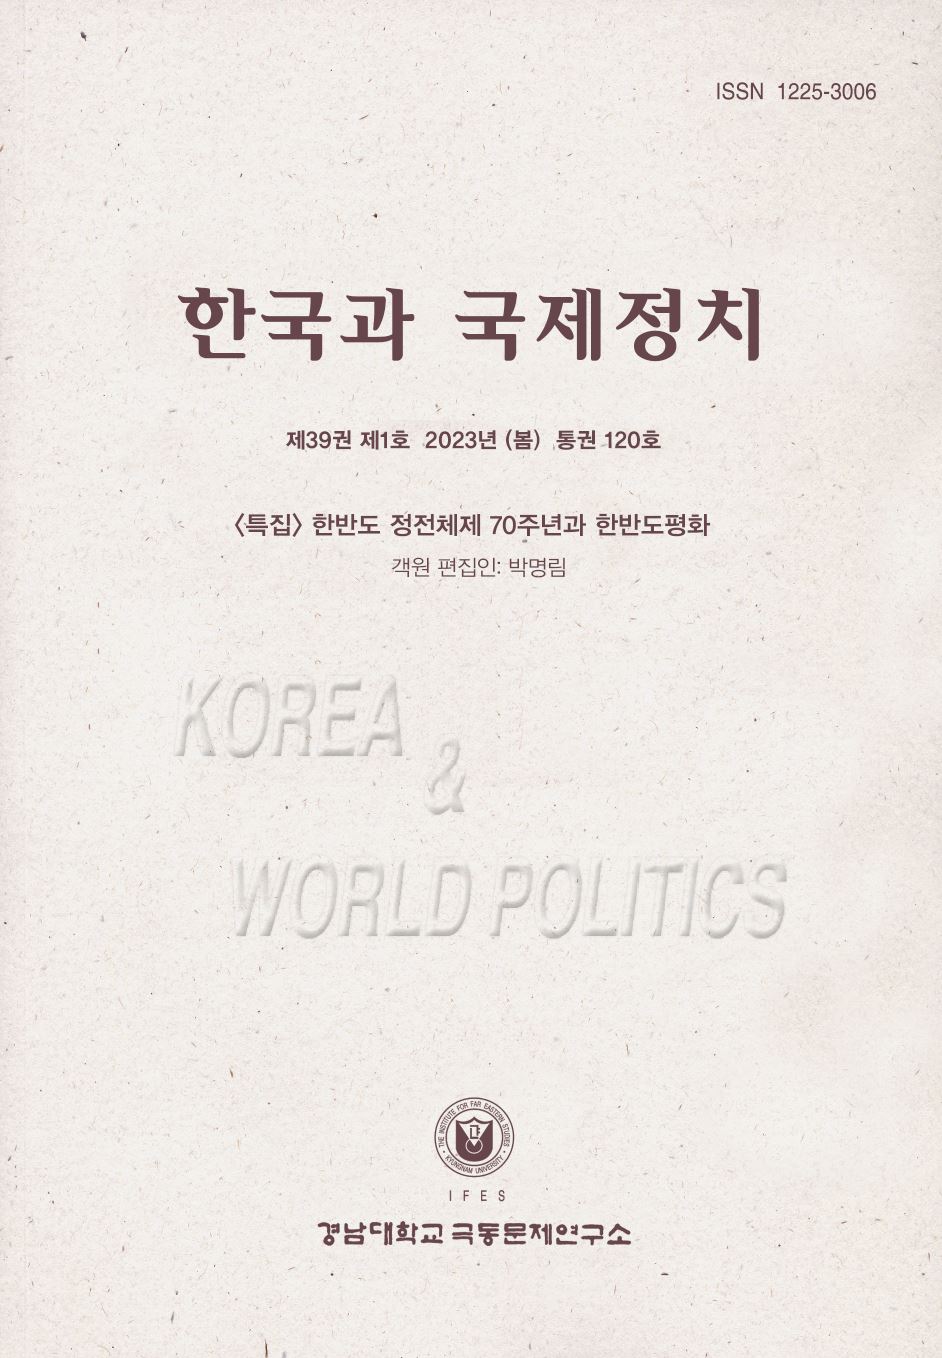 Korea and World Politics, Vol.39, No.1